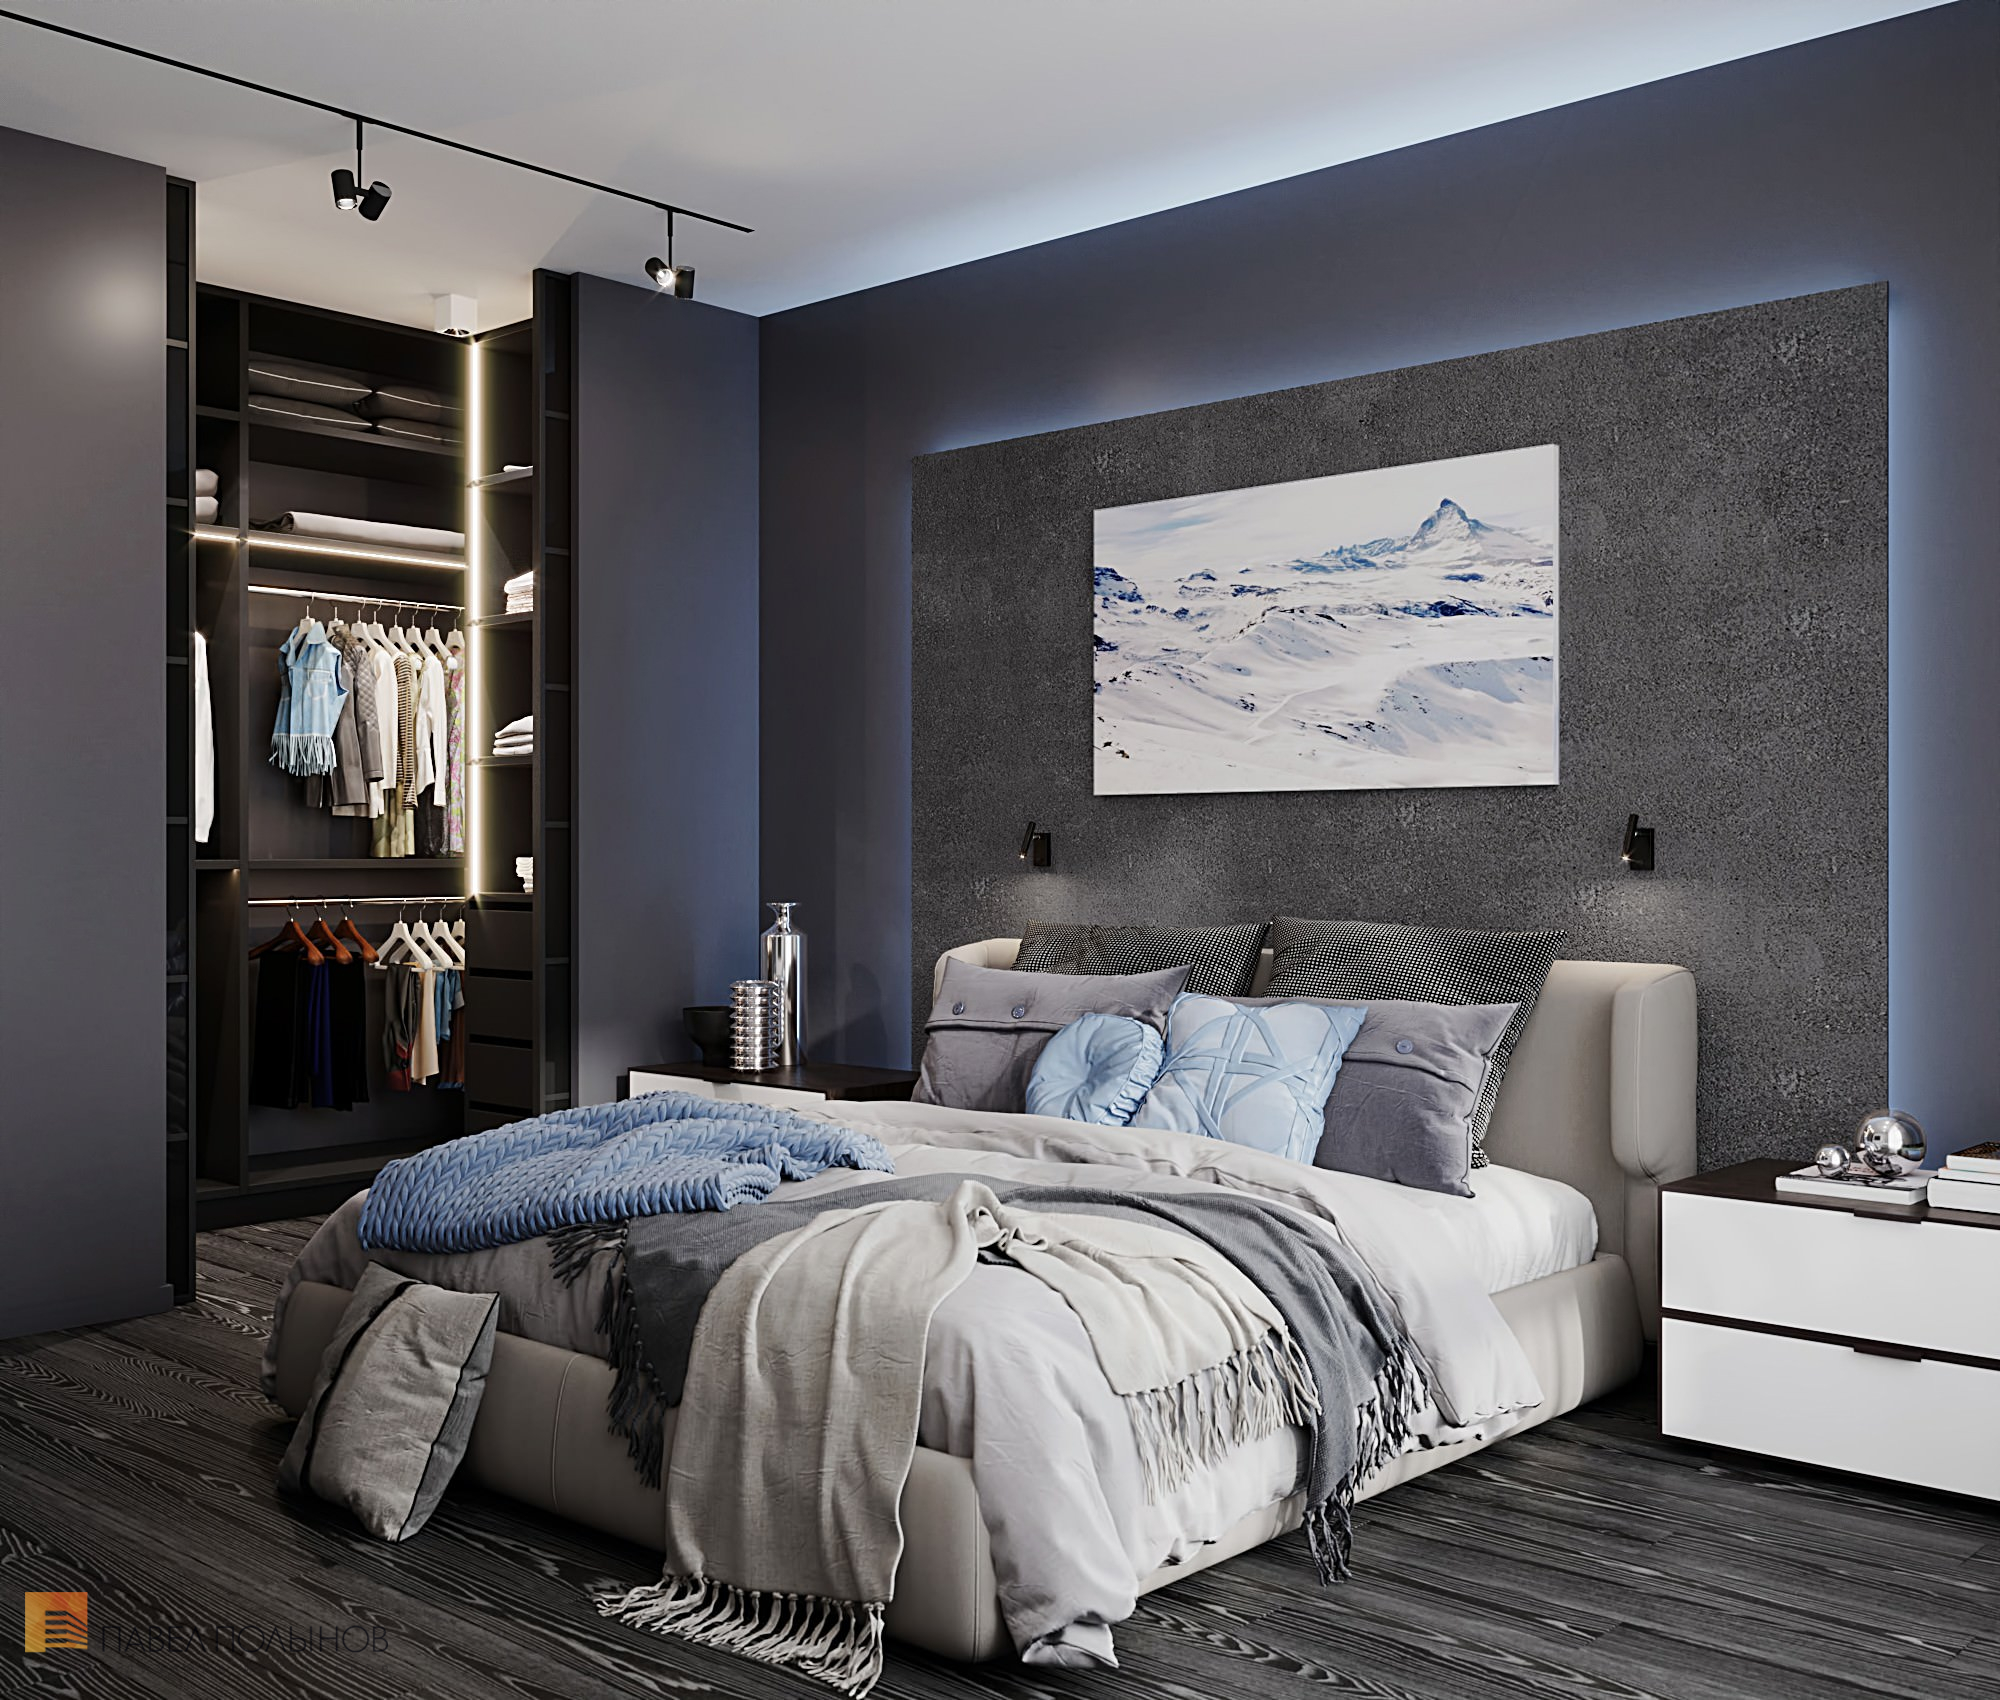 Фото дизайн спальни из проекта «Интерьер квартиры в современном стиле, ЖК «Остров», 90 кв.м.»